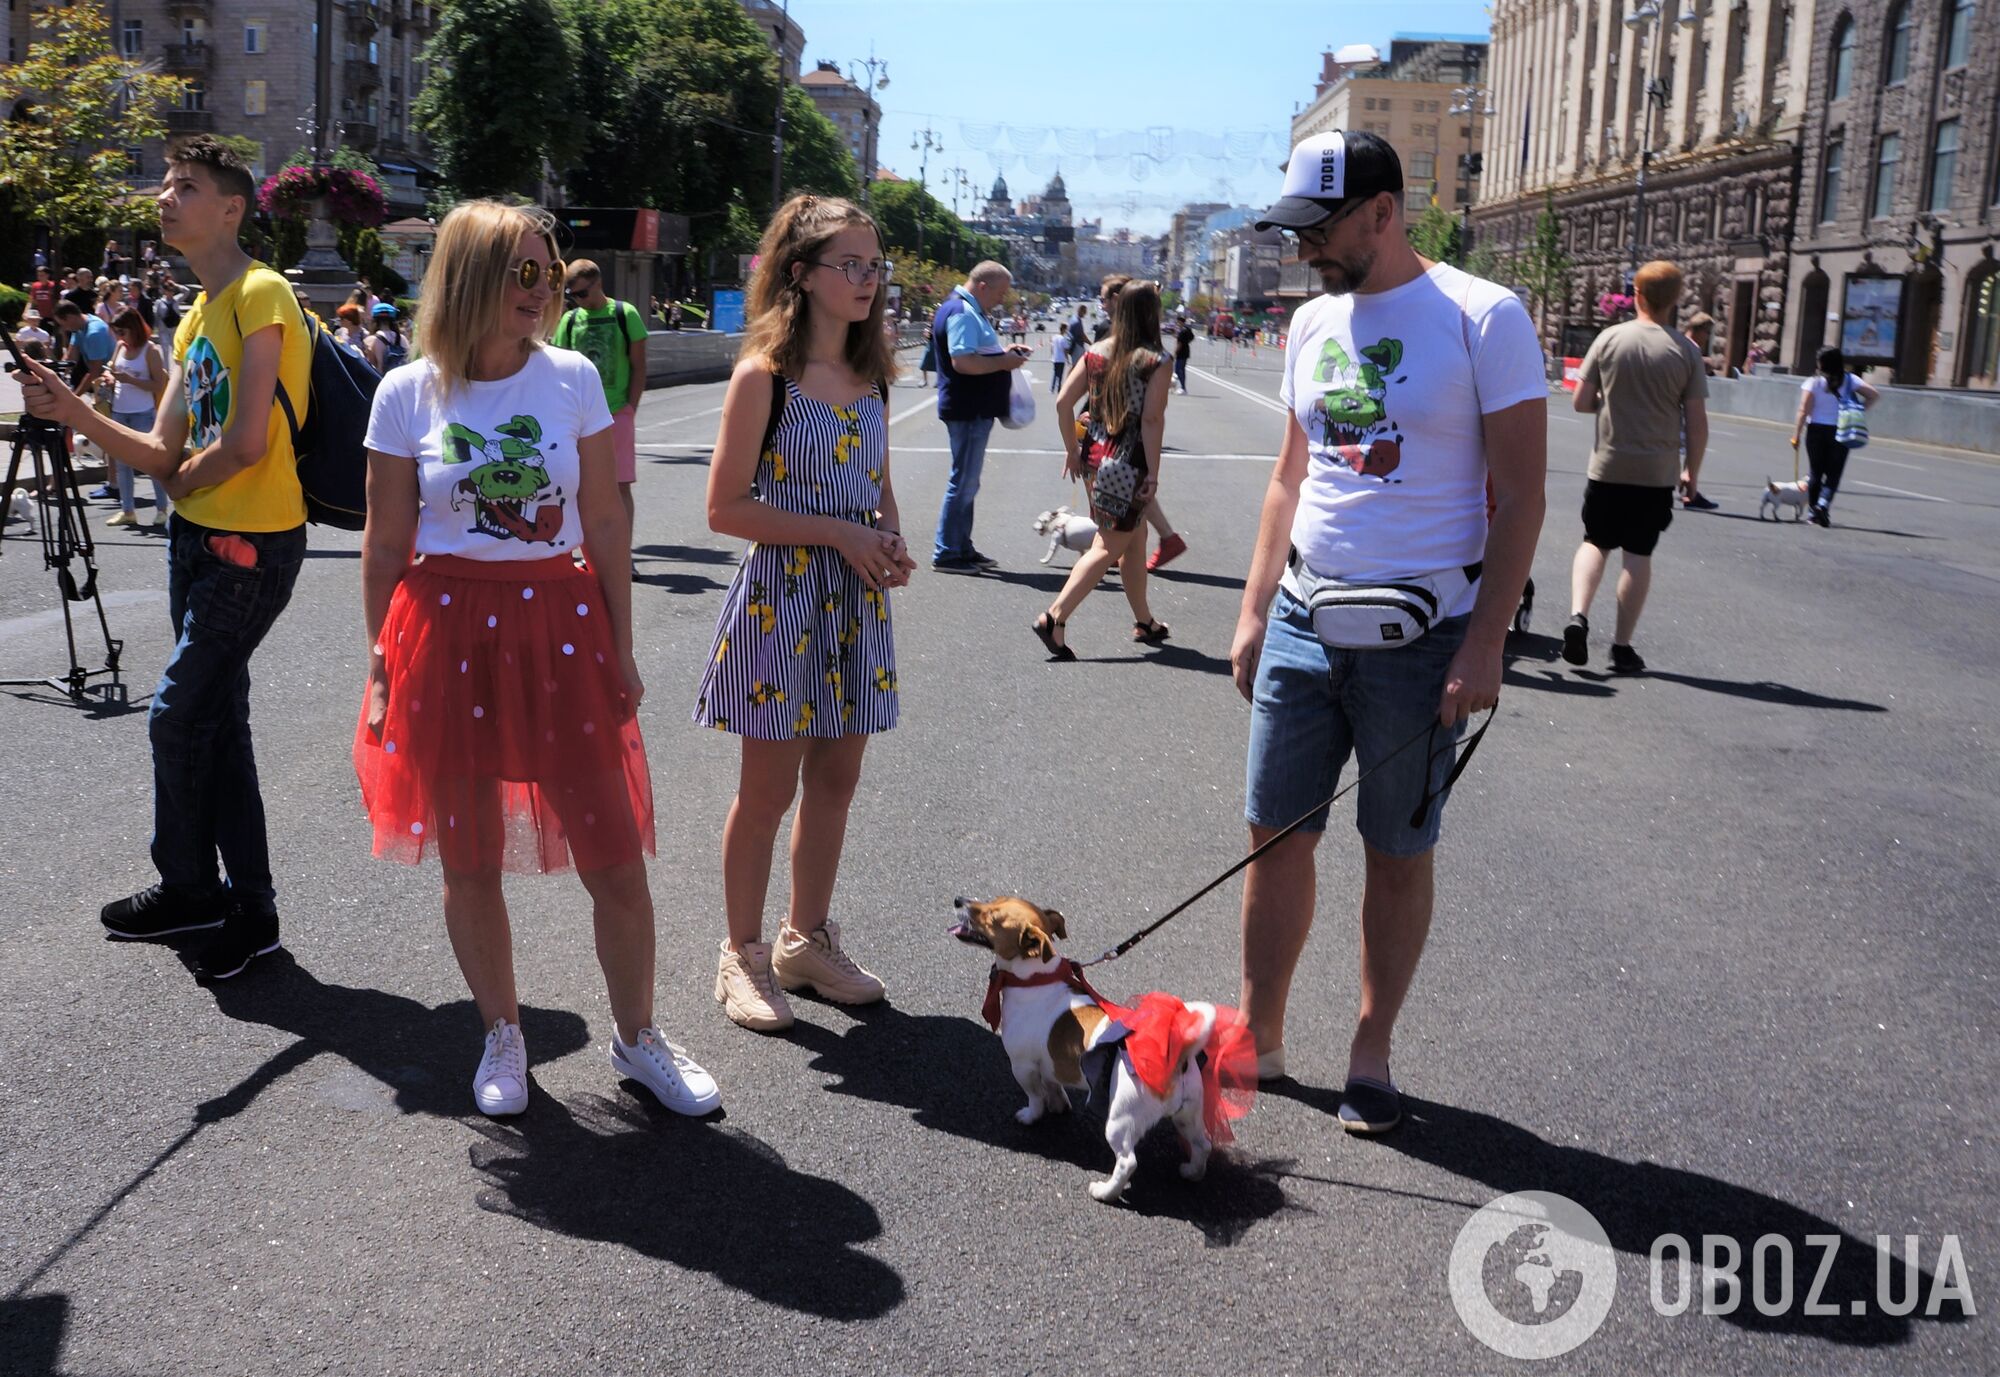 Сотни джек-расселов в центре Киева: яркий фоторепортаж